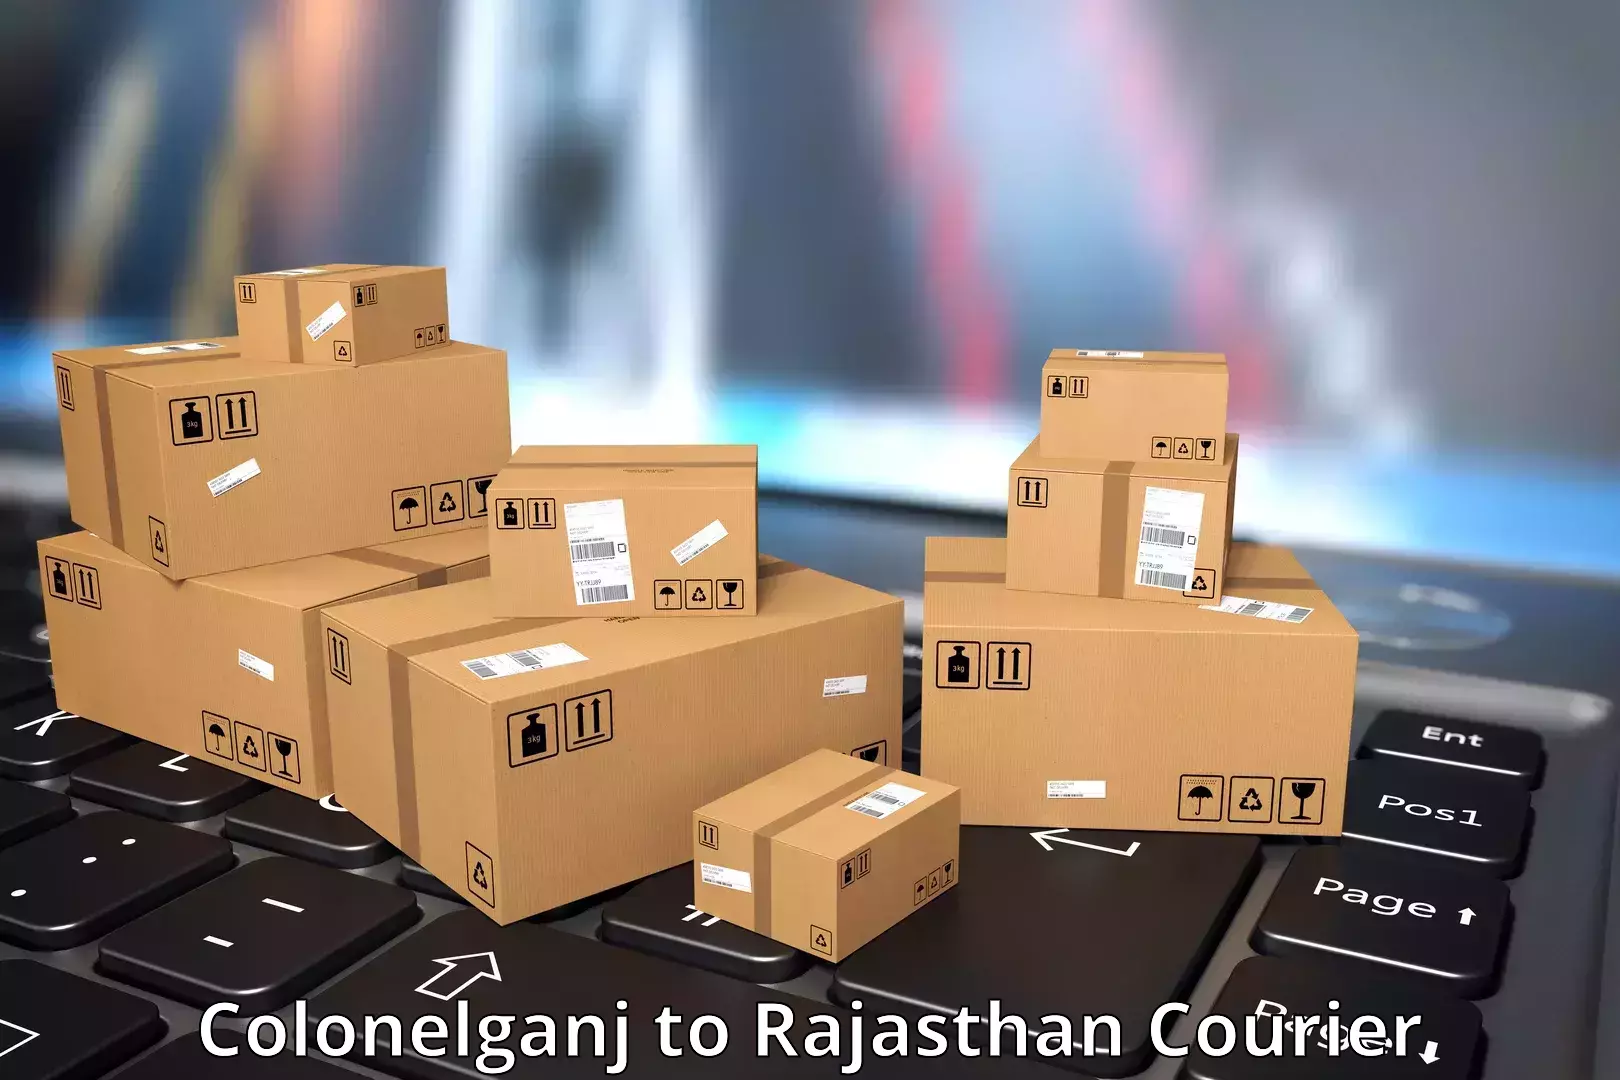 Premium courier services Colonelganj to Jhalawar